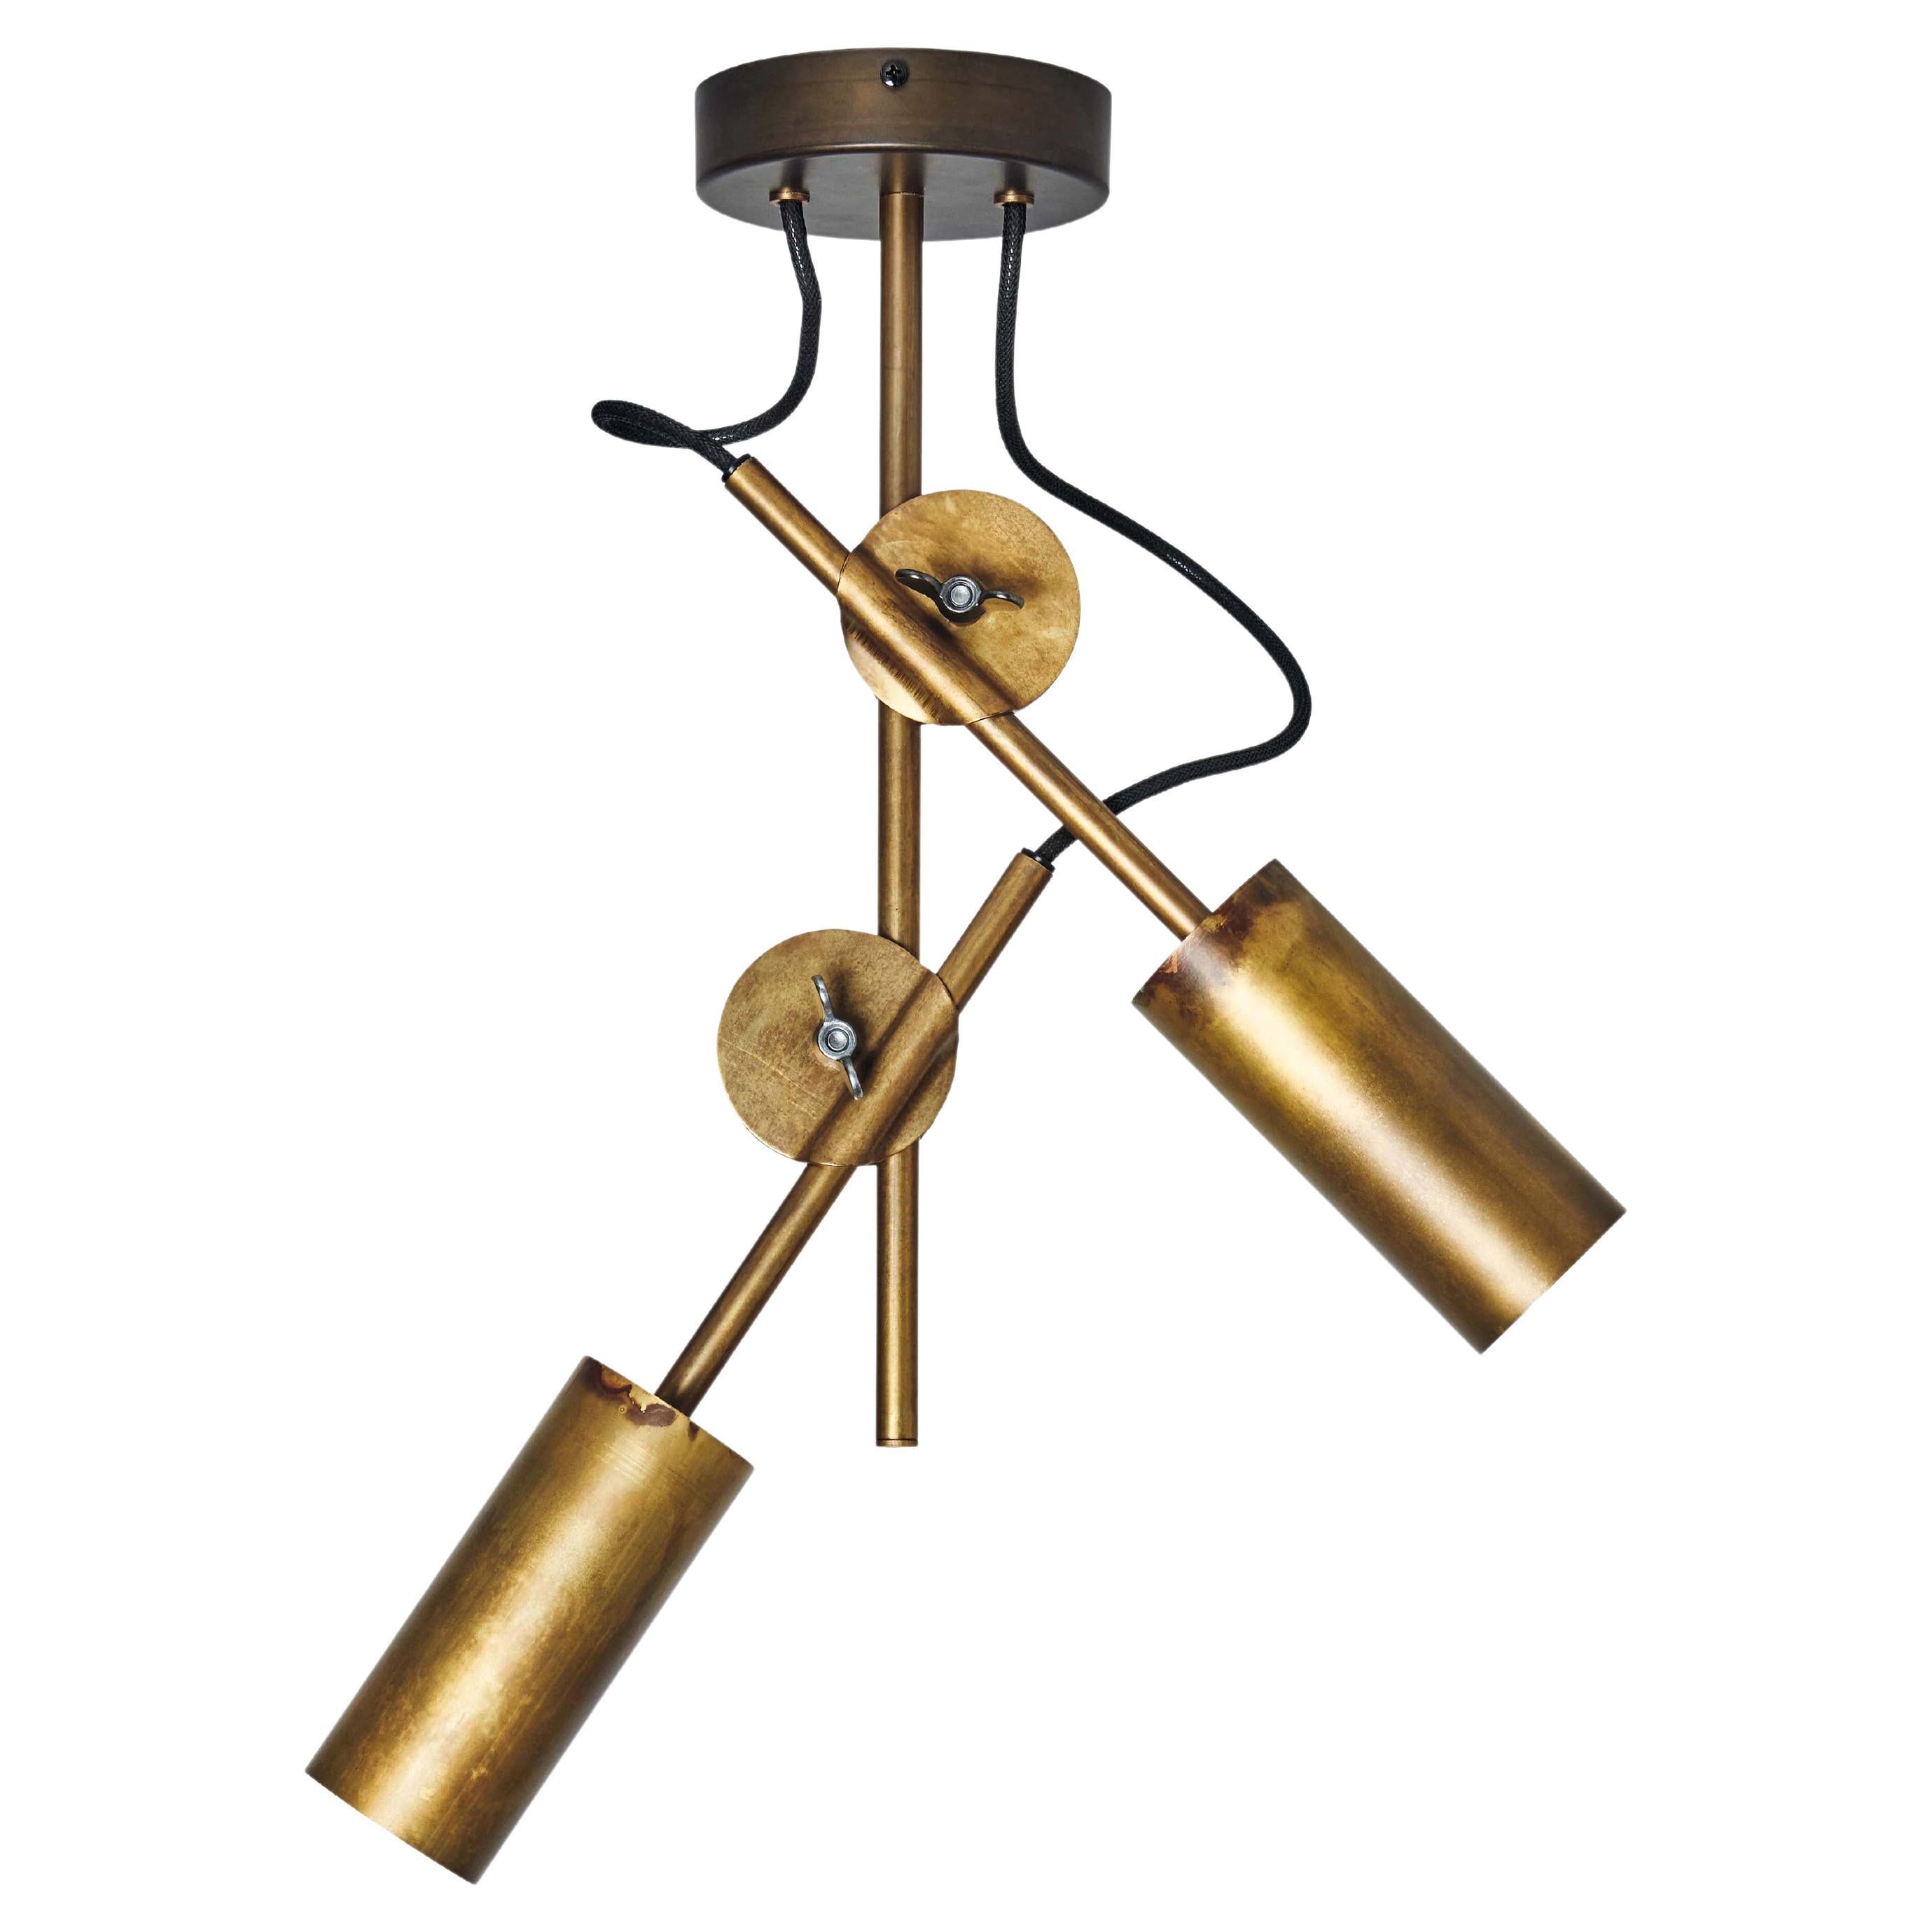 Johan Carpner 3452-6 Stav Spot 2 Brass Ceiling Lamp by Konsthantverk For Sale